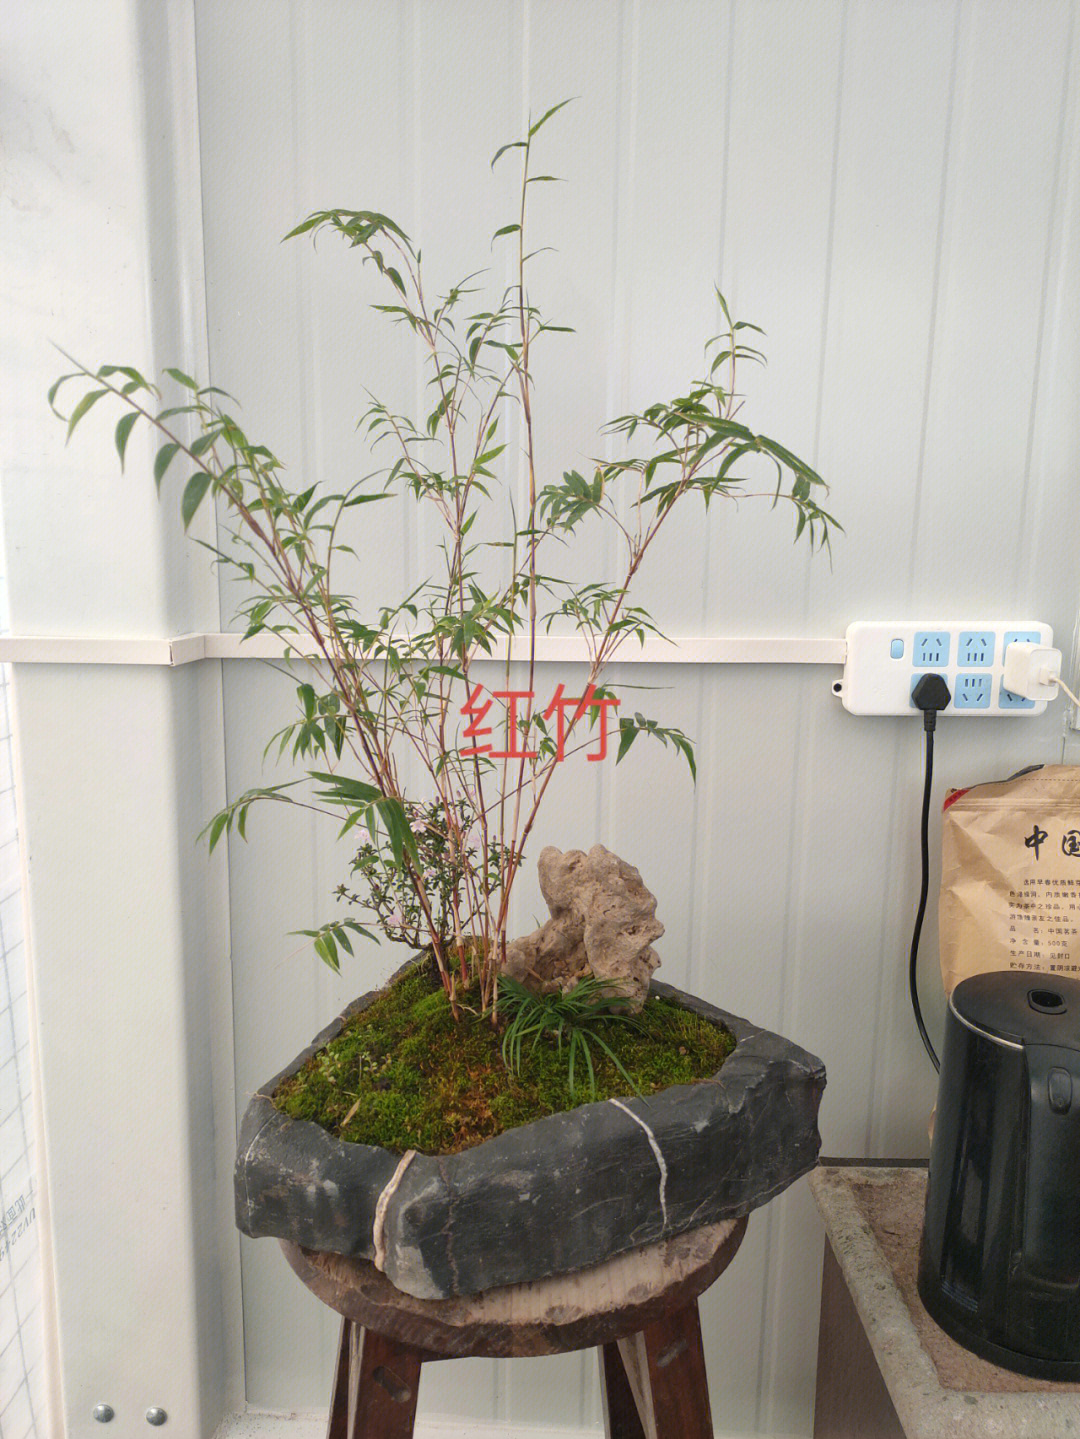 红竹室内养殖方法图片